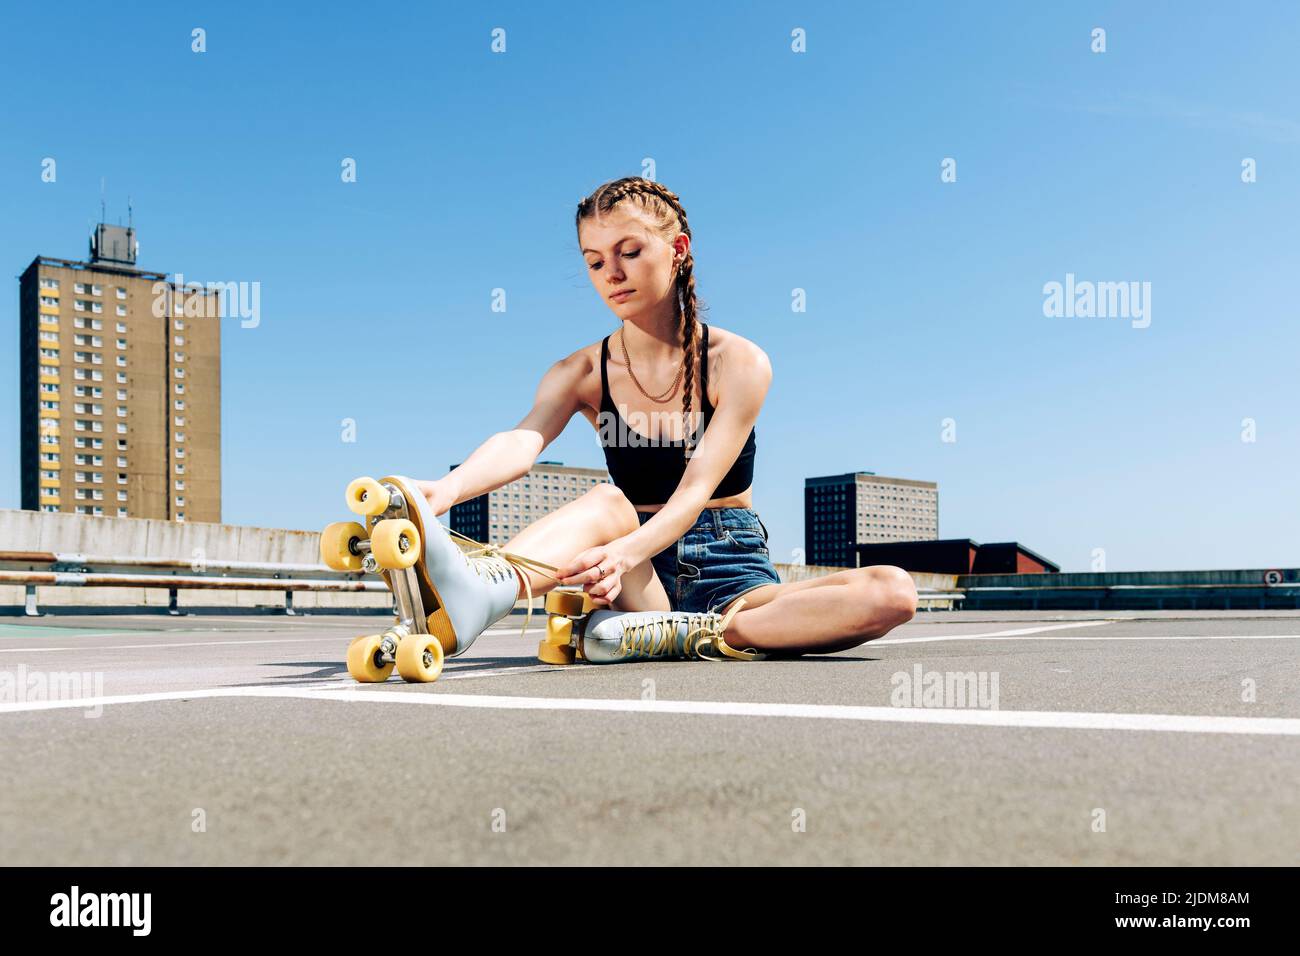 Jeune fille qui a noué ses patins à roulettes, fond urbain Banque D'Images